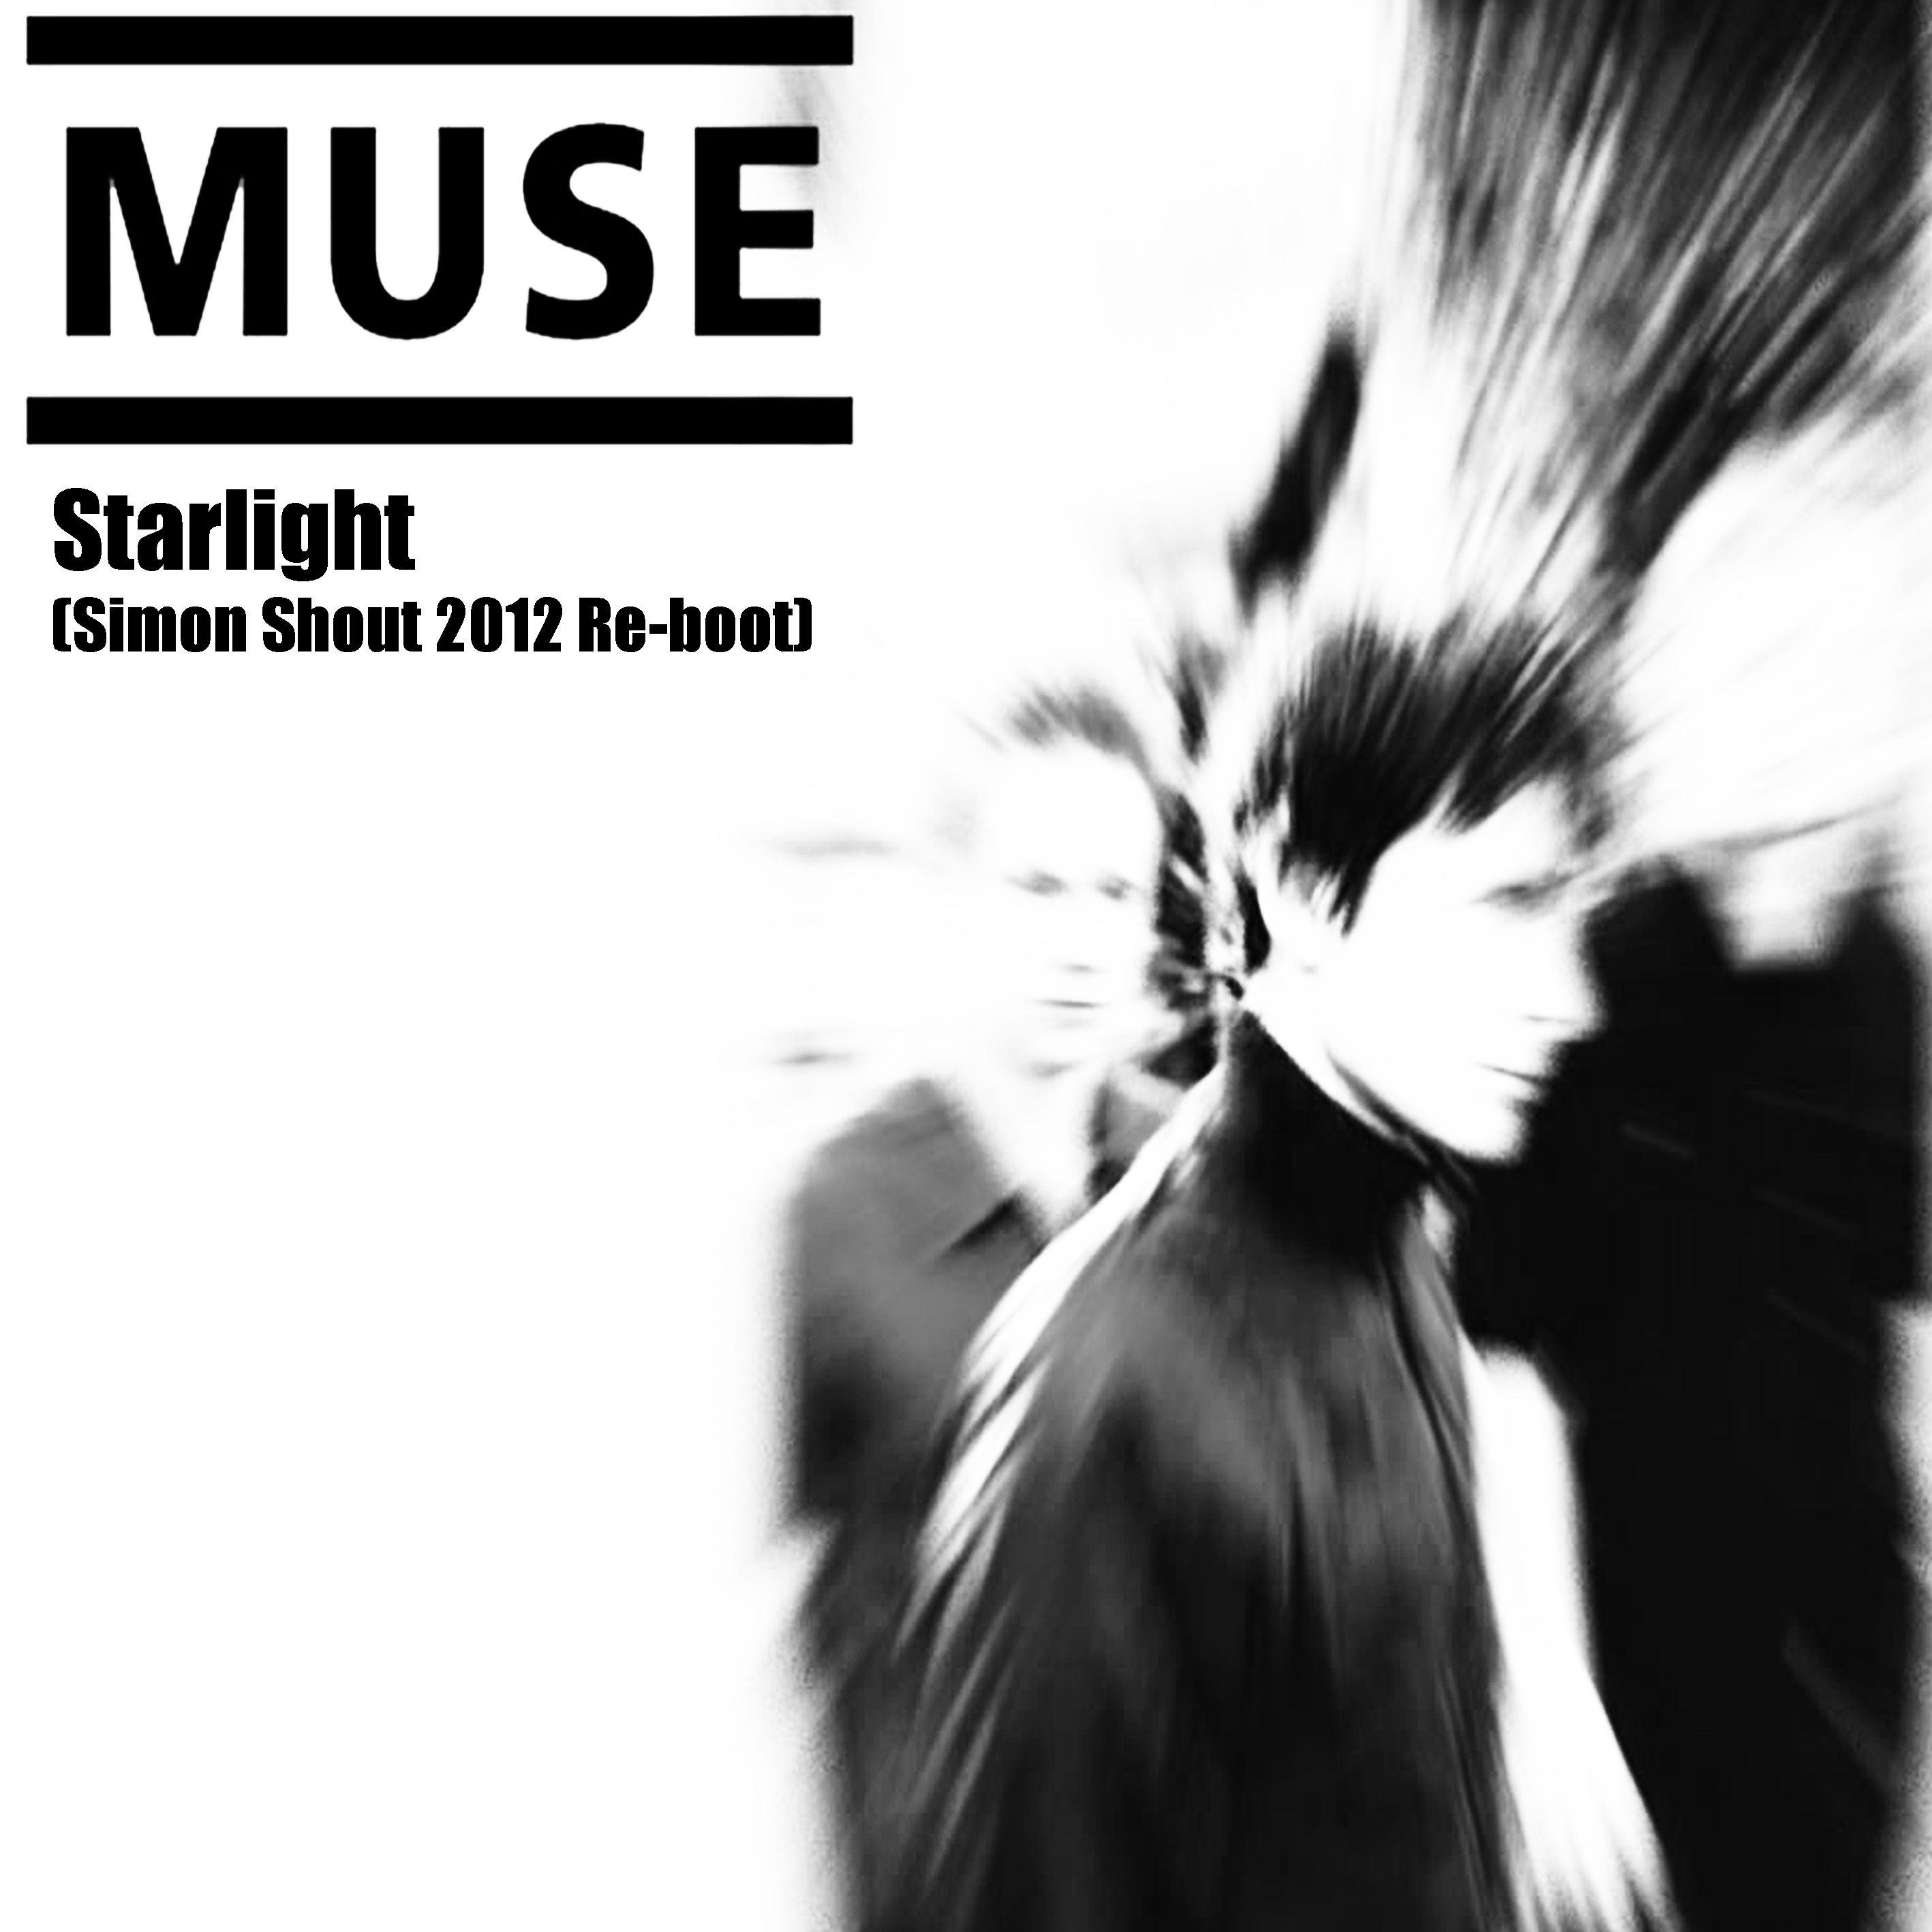 Музыка спой ремикс. Мьюз Старлайт. Muse Life. Starlight Ep Muse. Muse Starlight (Single).